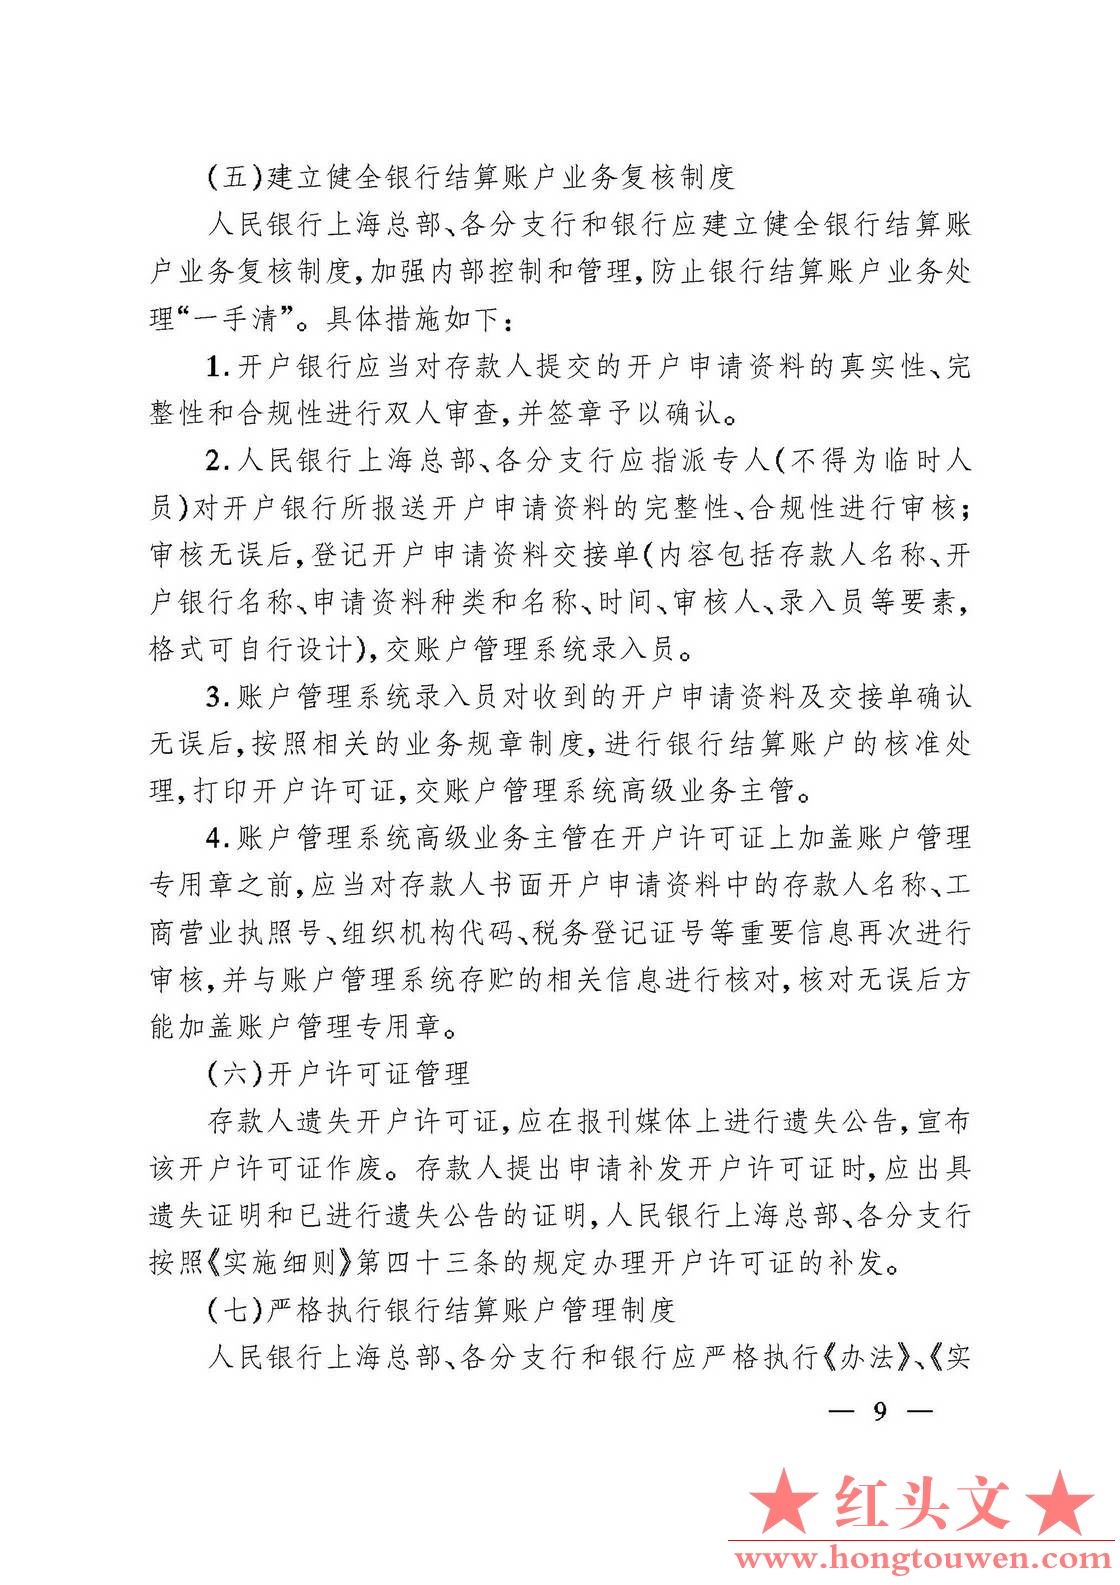 银发[2006]71号-中国人民银行关于规范人民币银行结算账户管理有关问题的通知_页面_09..jpg